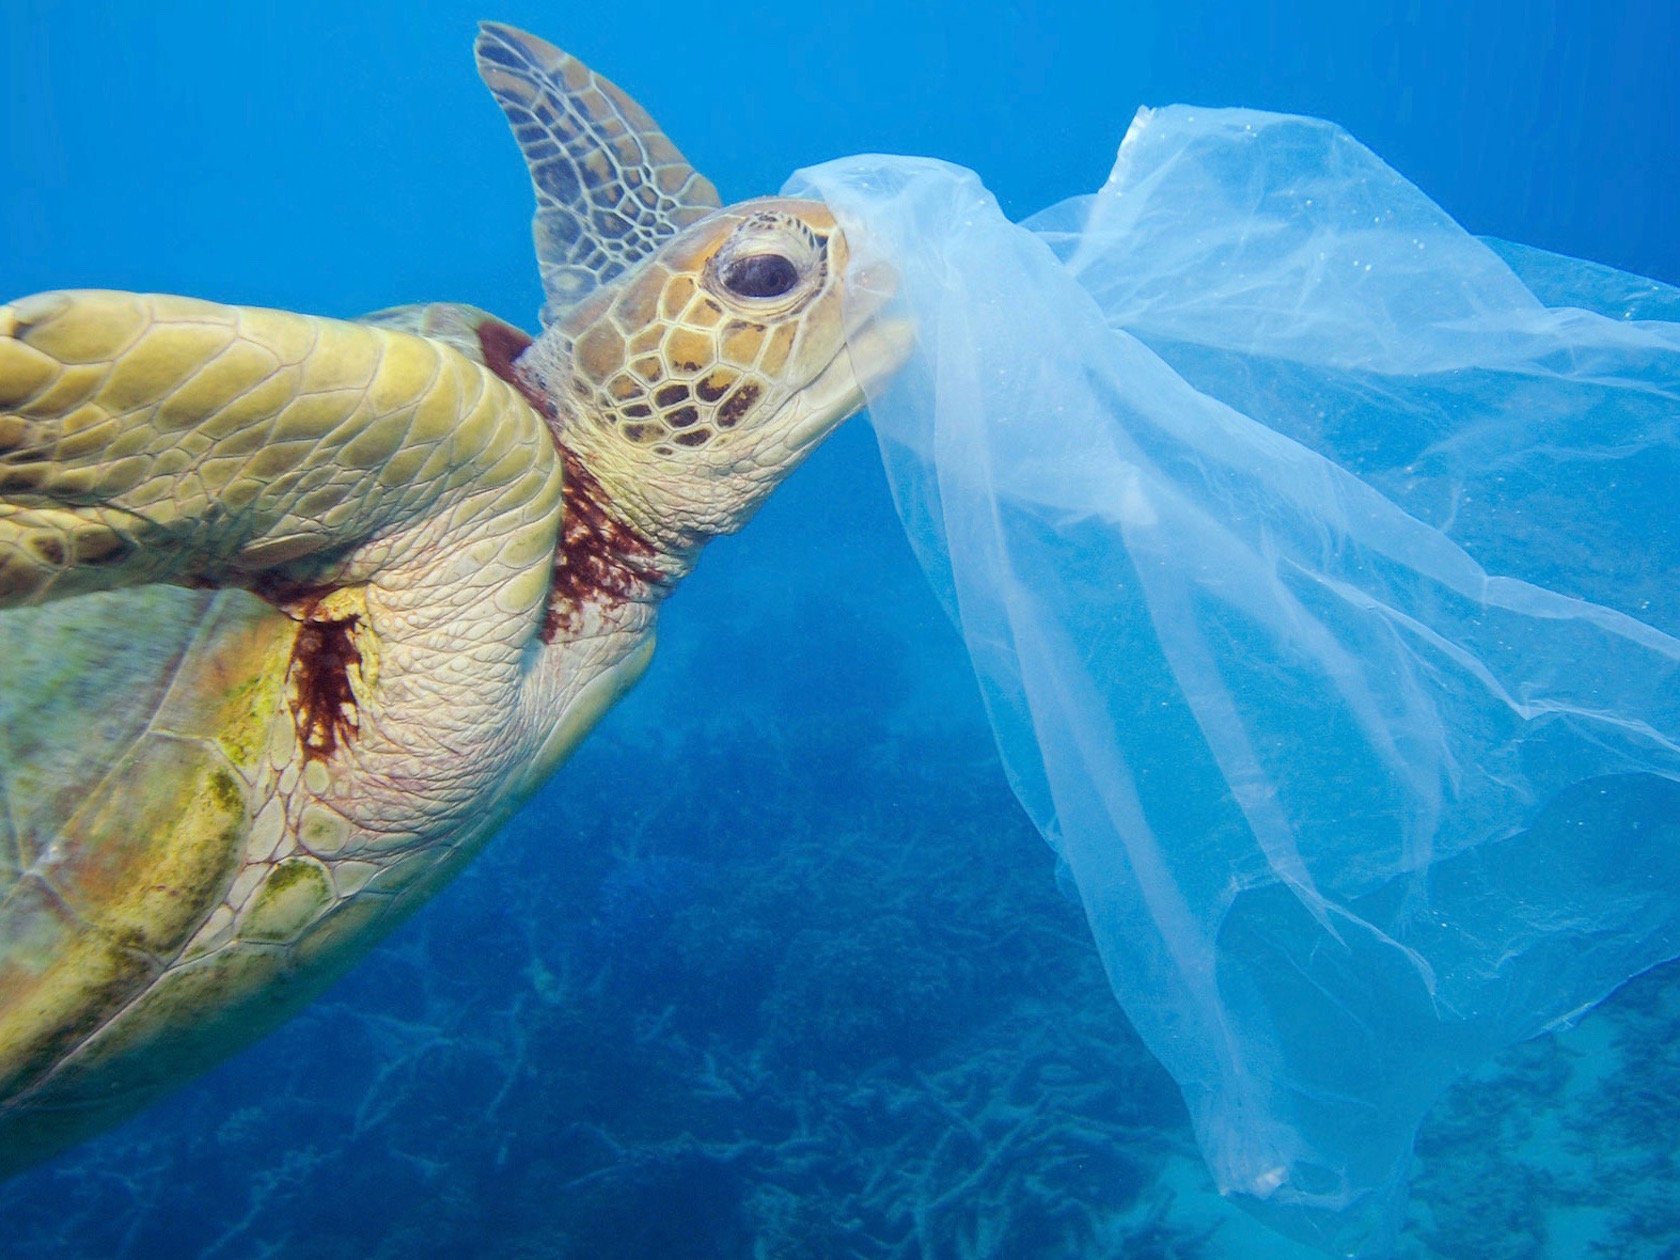 Meeresschildkröte die Plastiktüte frisst